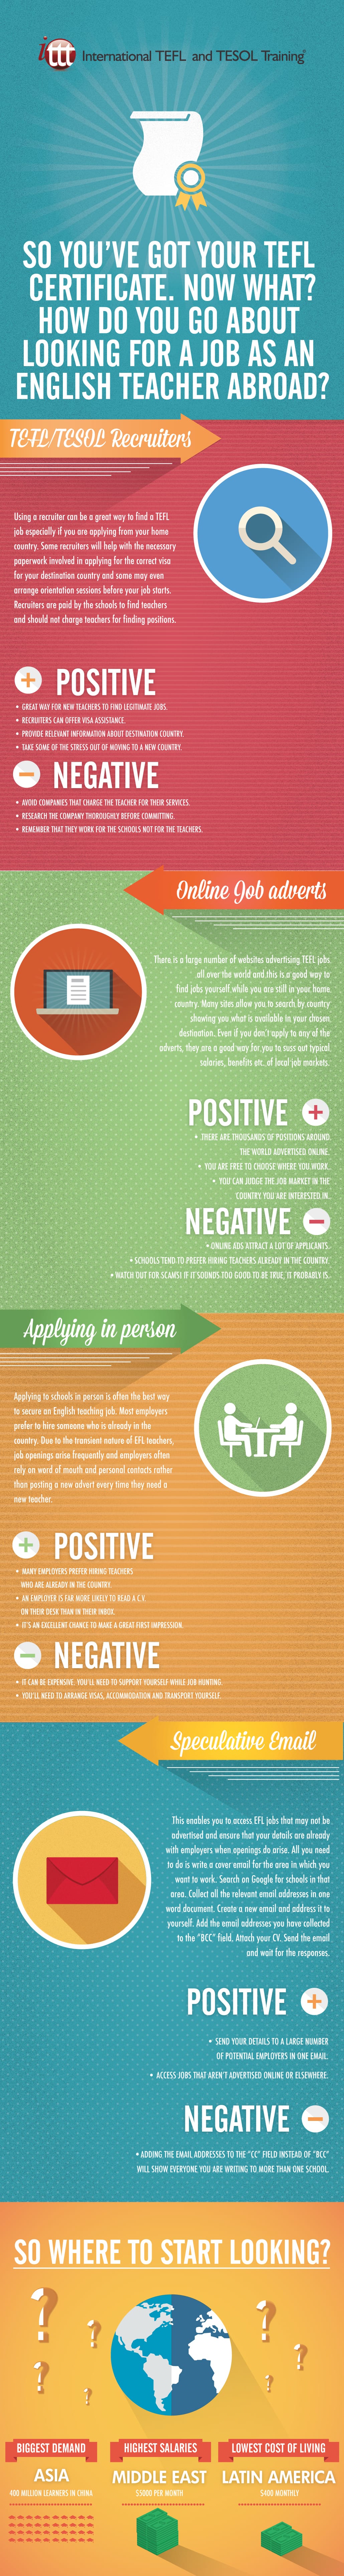 Infographic Find a job as an English Teacher